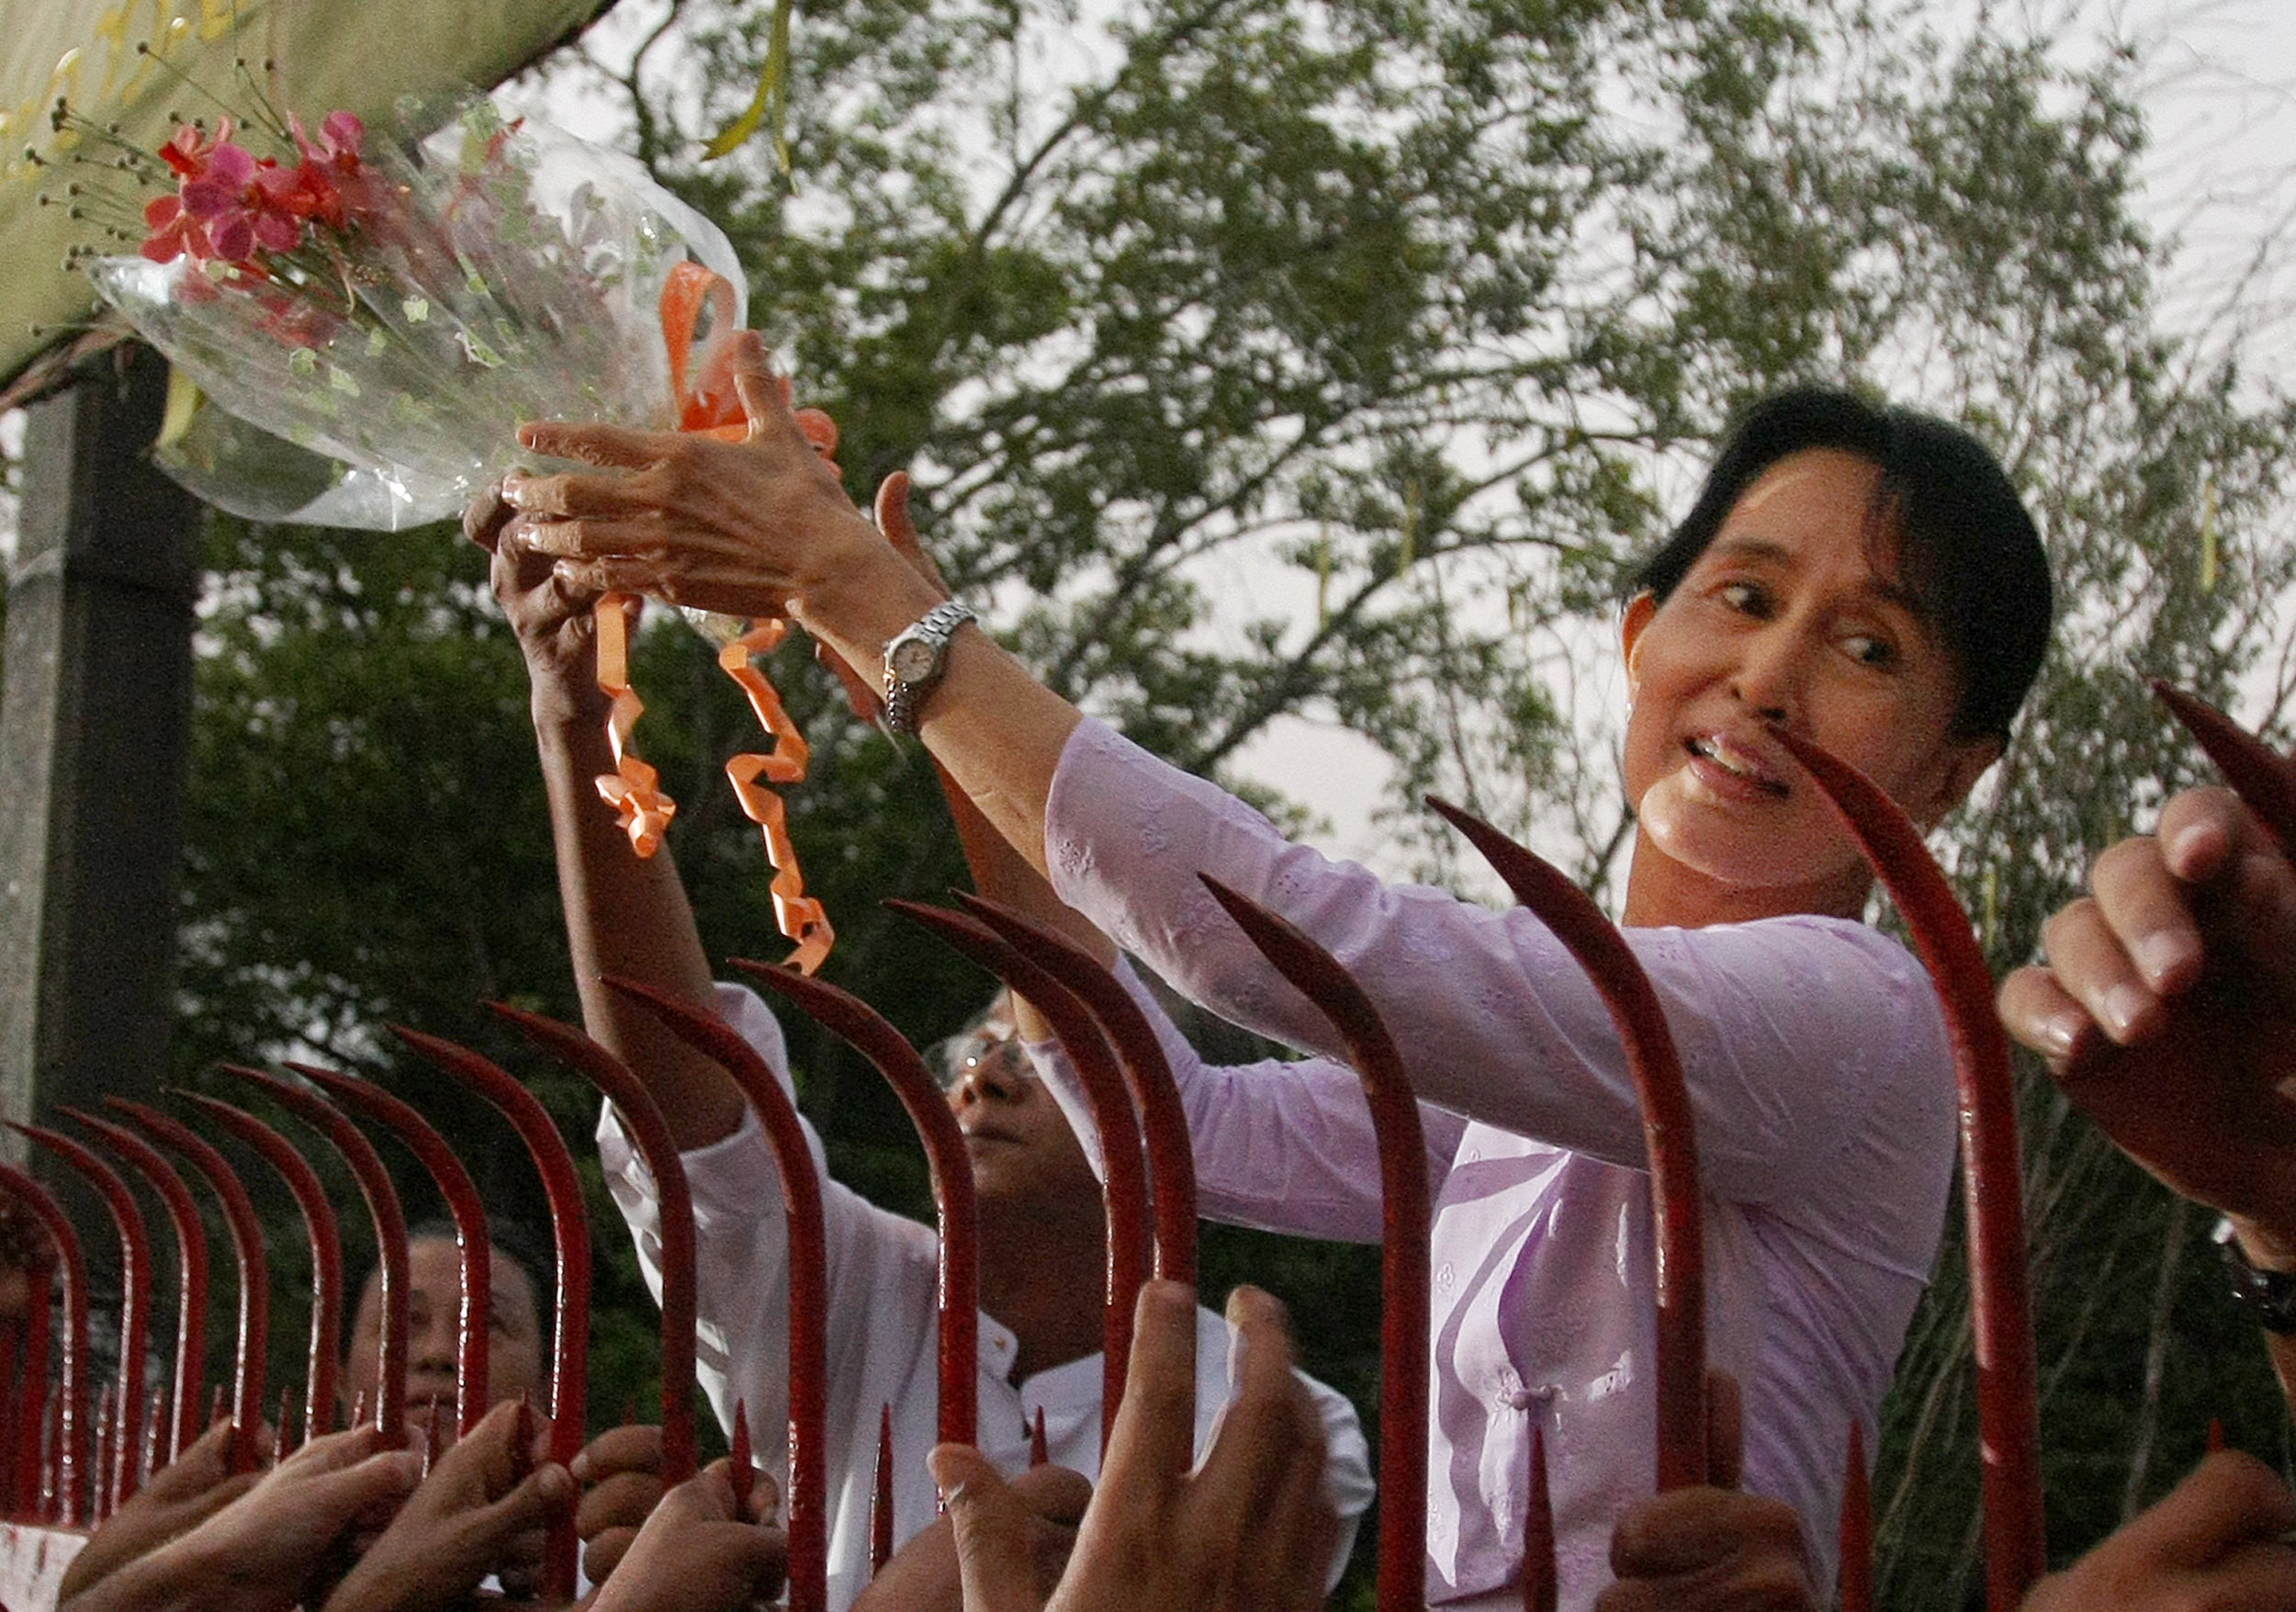 La líder de la oposición Aung San Suu Kyi saluda a sus partidarios tras su liberación en Yangon el 13 de noviembre de 2010